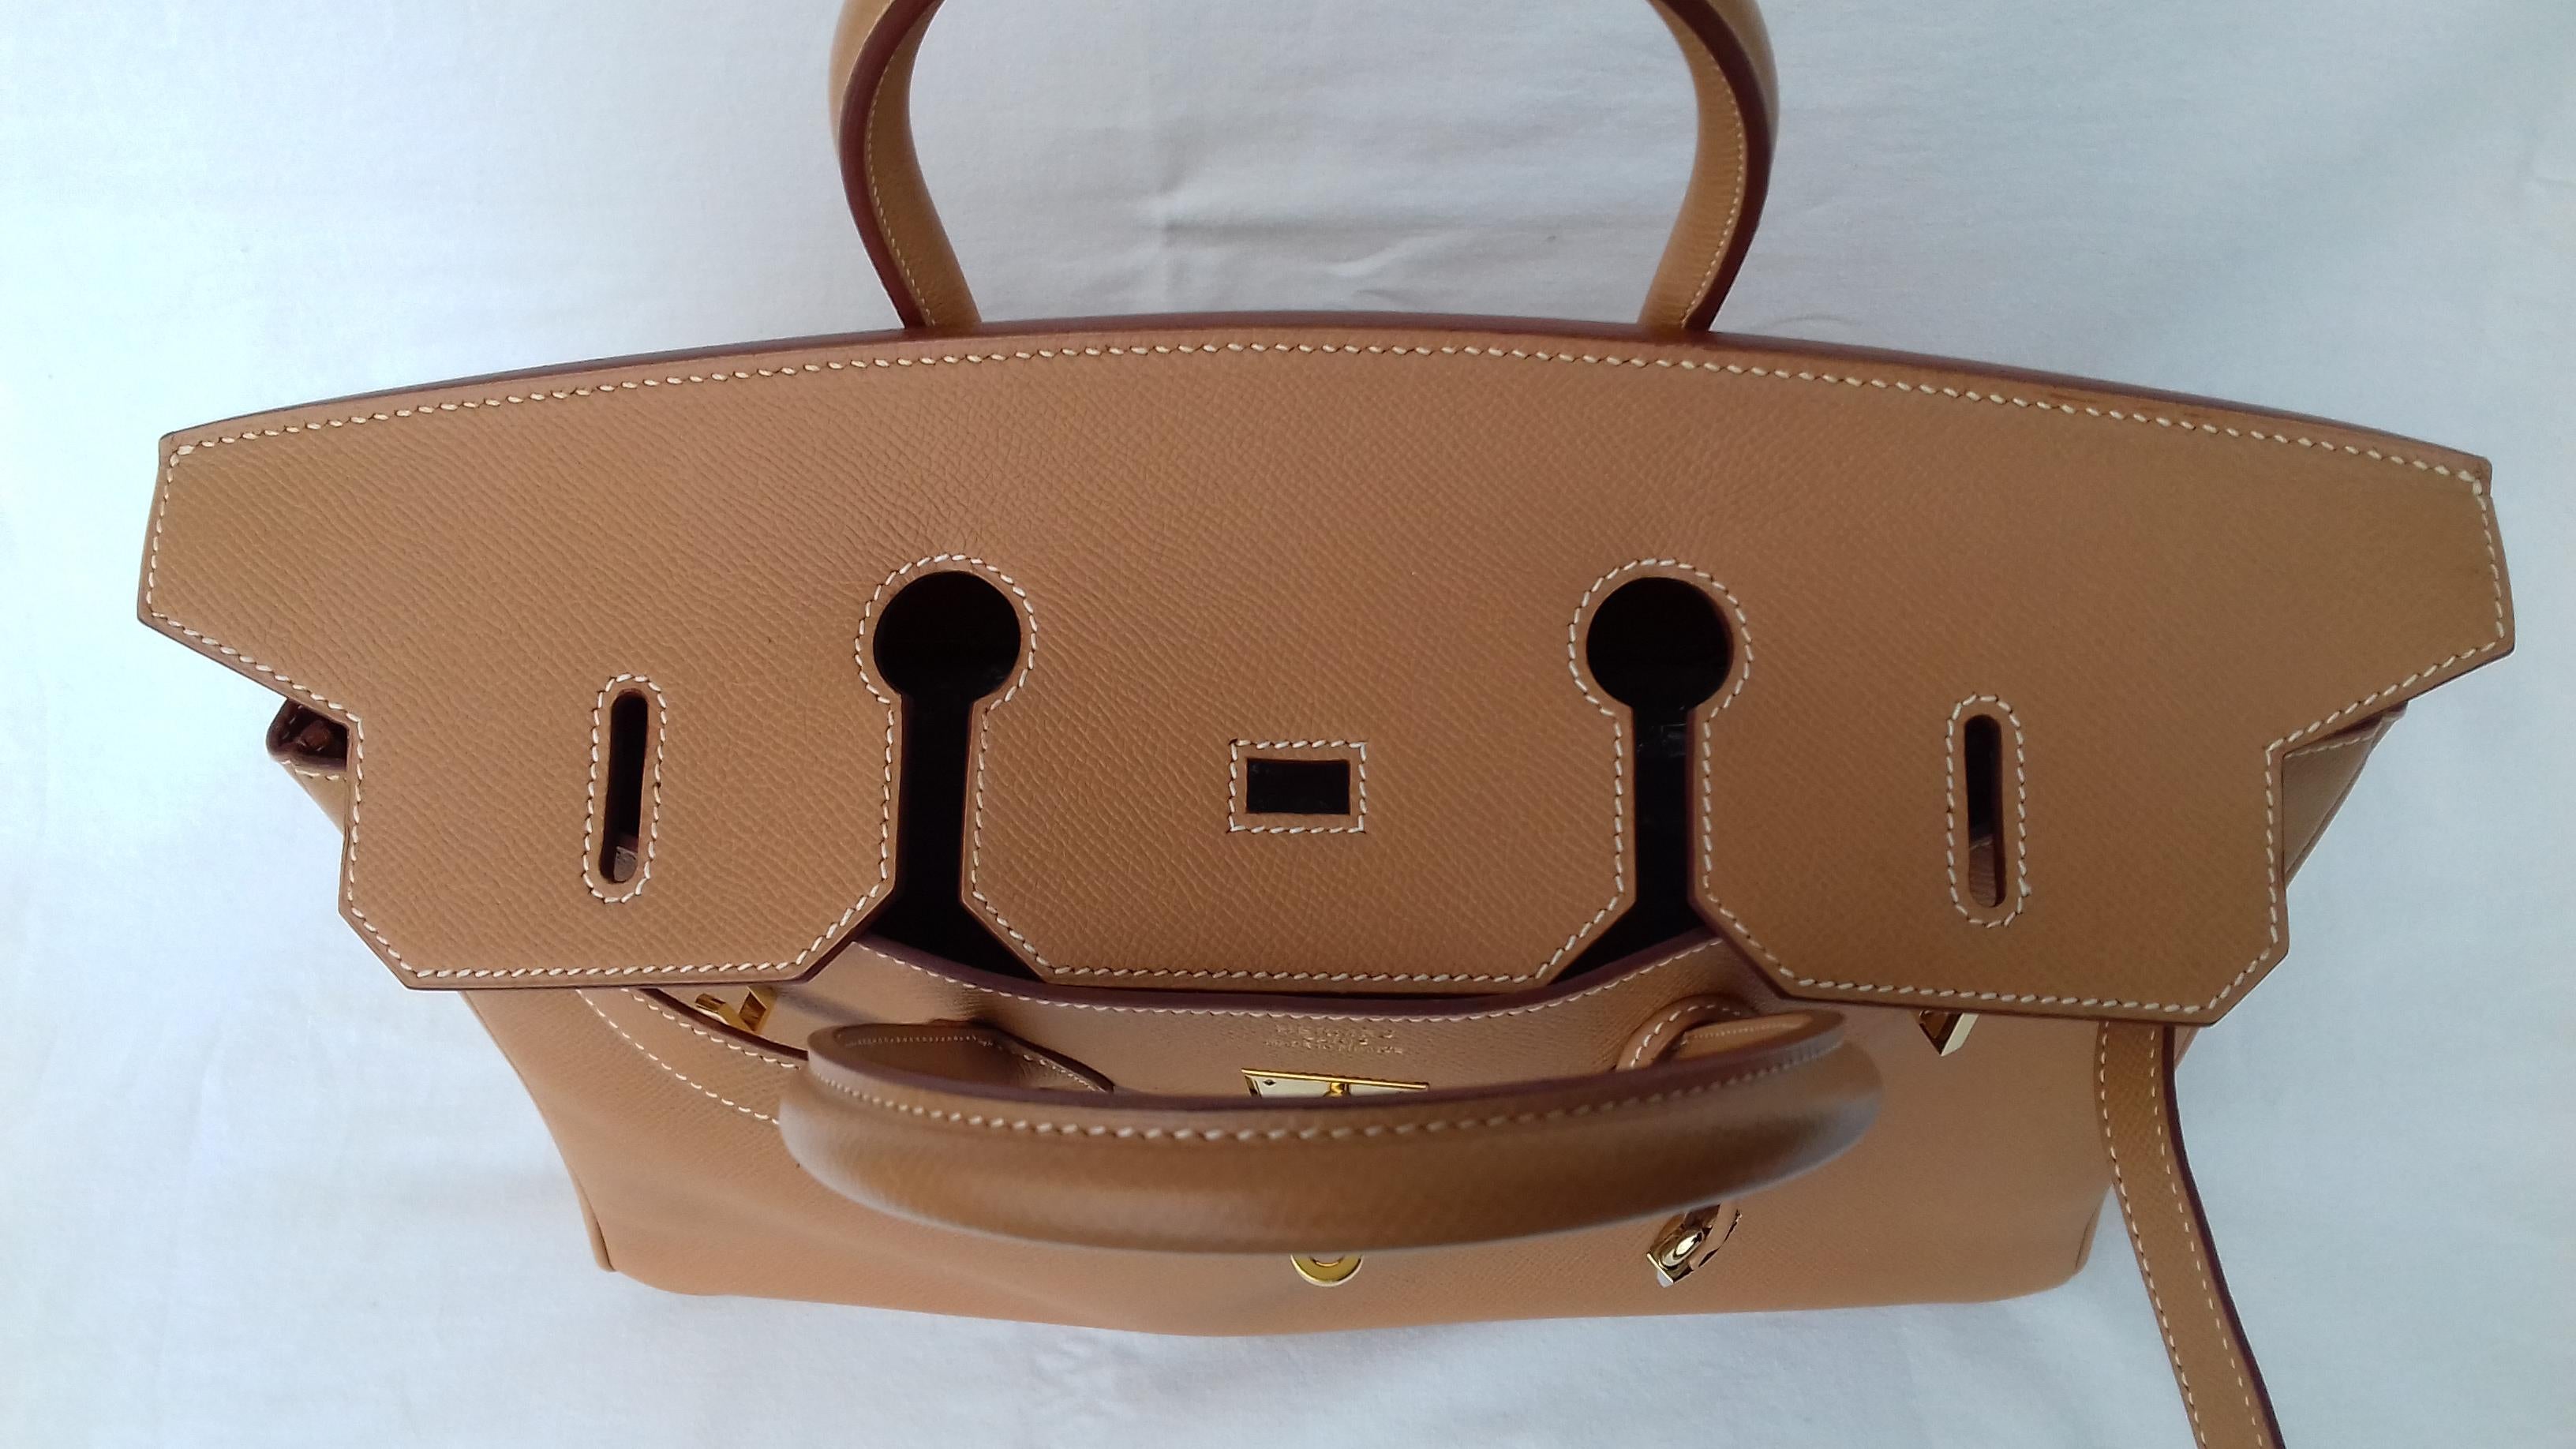 Hermès Birkin Top Handle Bag Naturel Epsom Leather Gold Hdw 35 cm 5